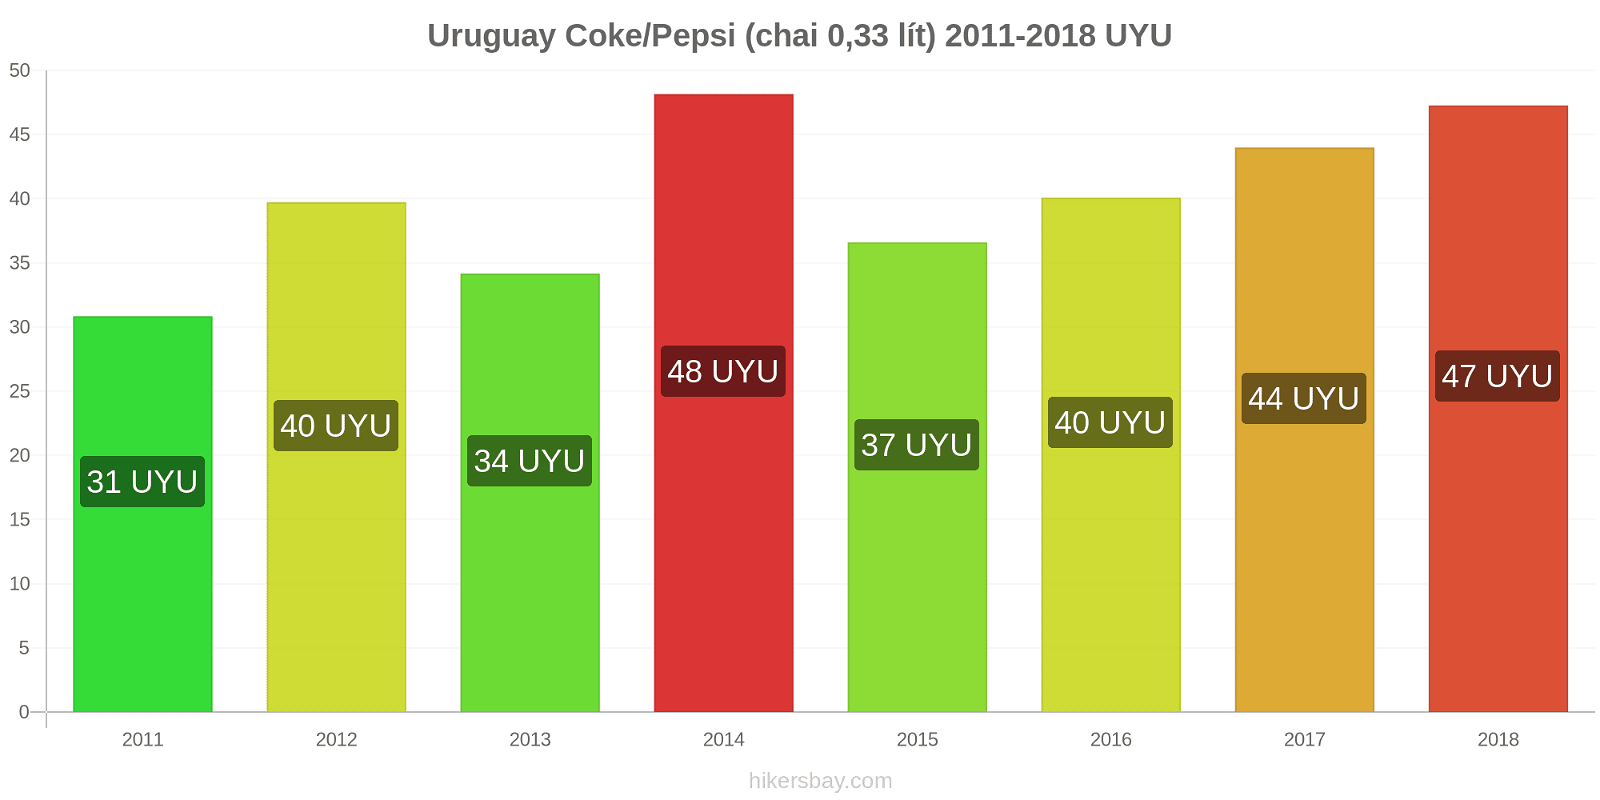 Uruguay thay đổi giá cả Coca-Cola/Pepsi (chai 0.33 lít) hikersbay.com